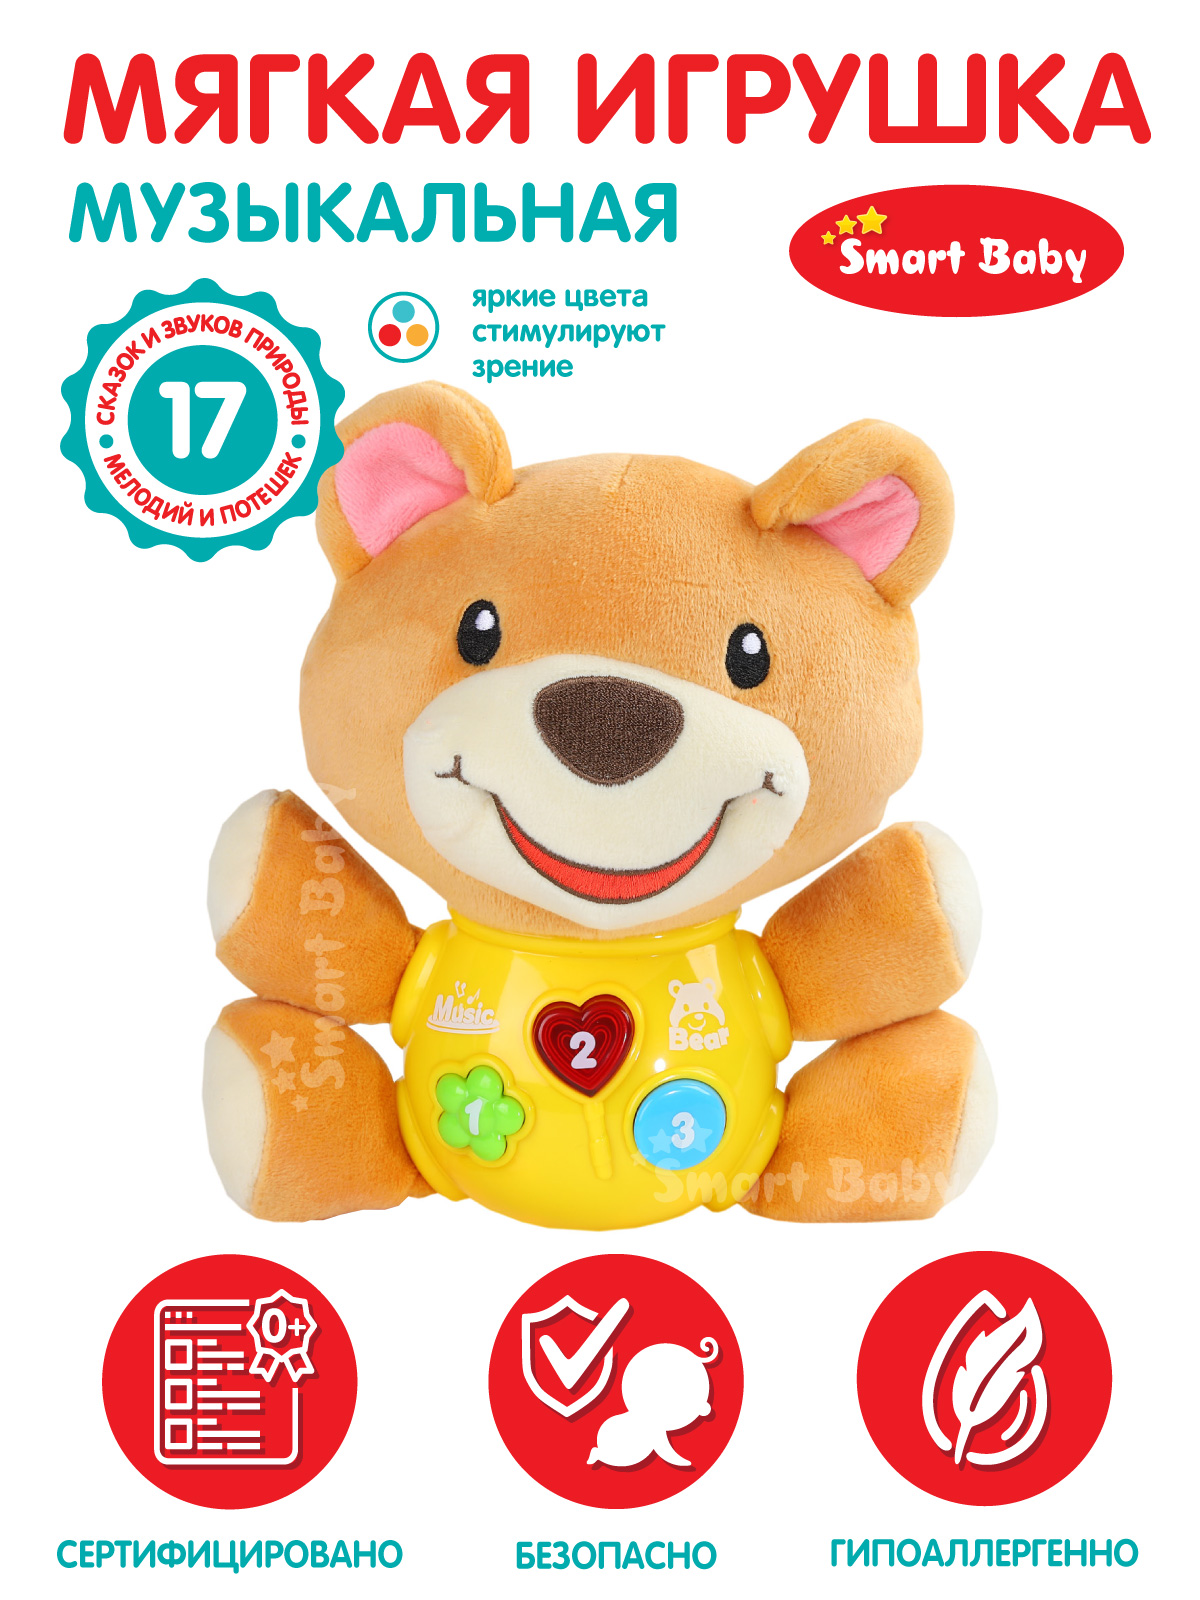 Развивающая мягкая игрушка Smart Baby Мишка ТМ Smart Baby, свет, звук, JB0334072 развивающая игрушка медведь